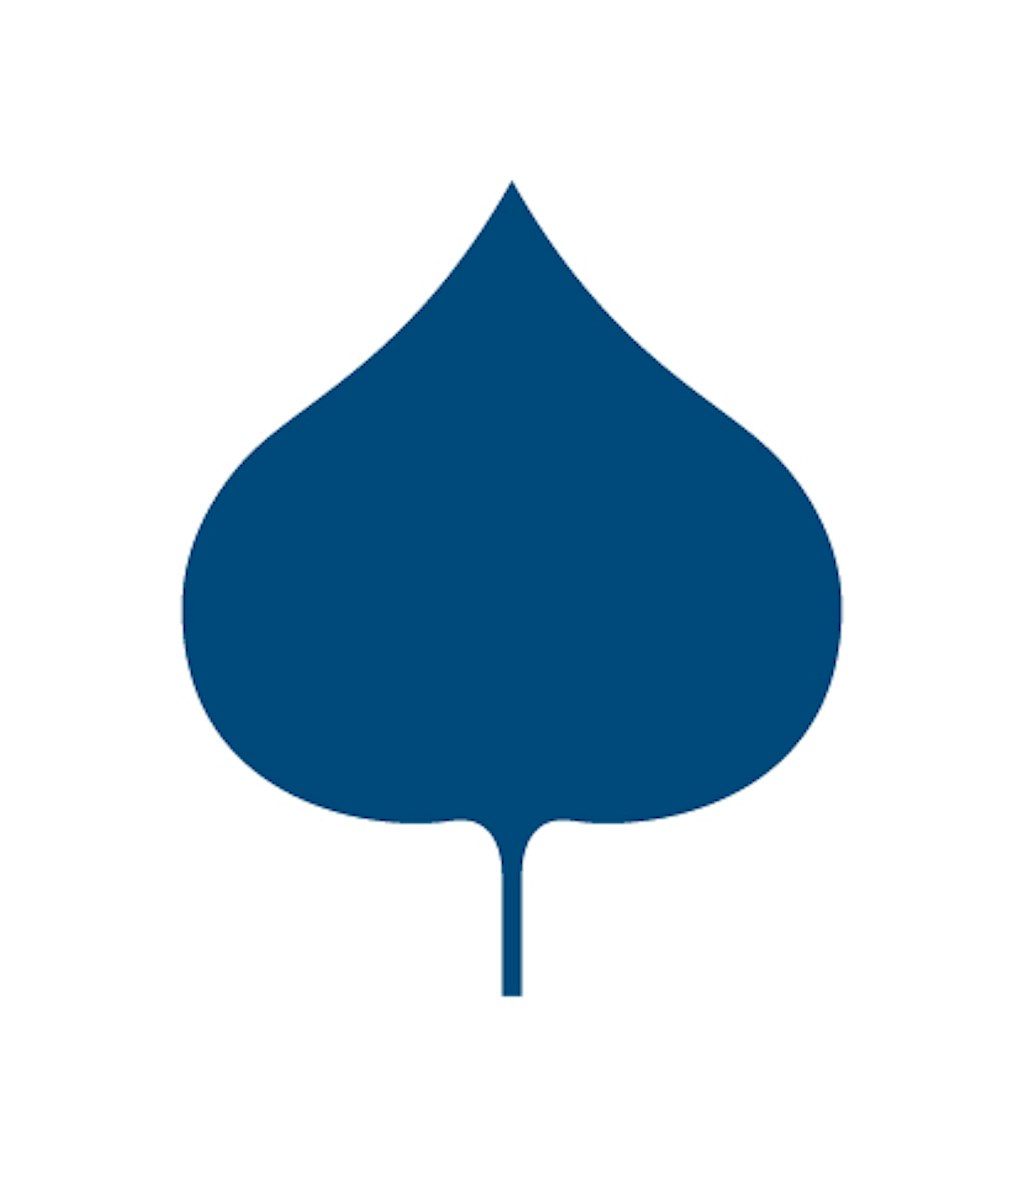 Aspen Institute CE leaf symbol